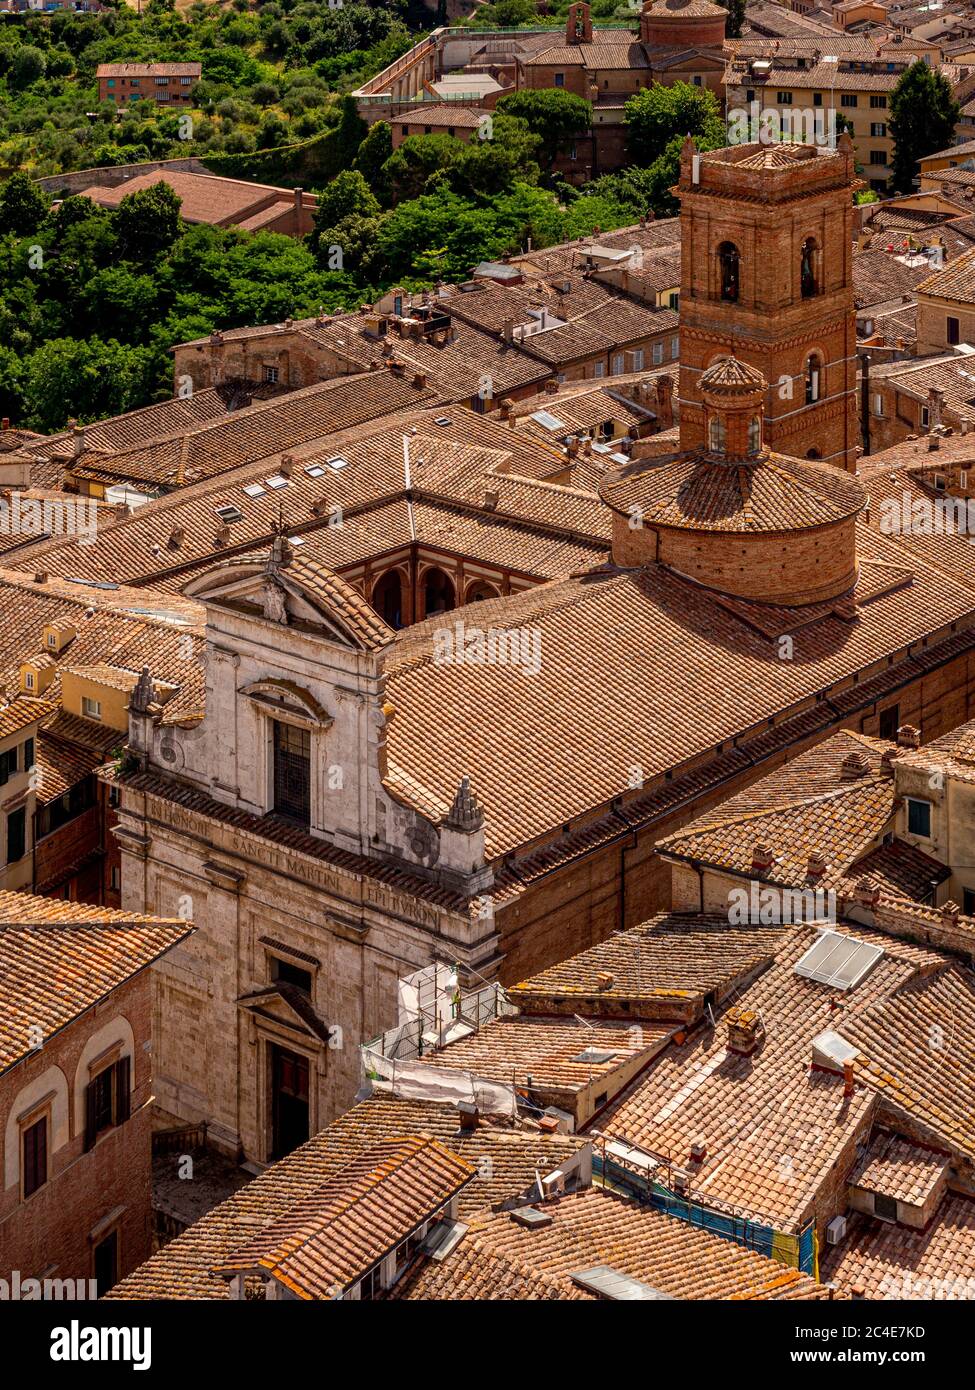 Vista aerea dei tetti in terracotta e della chiesa di San Martino. Siena. Italia Foto Stock